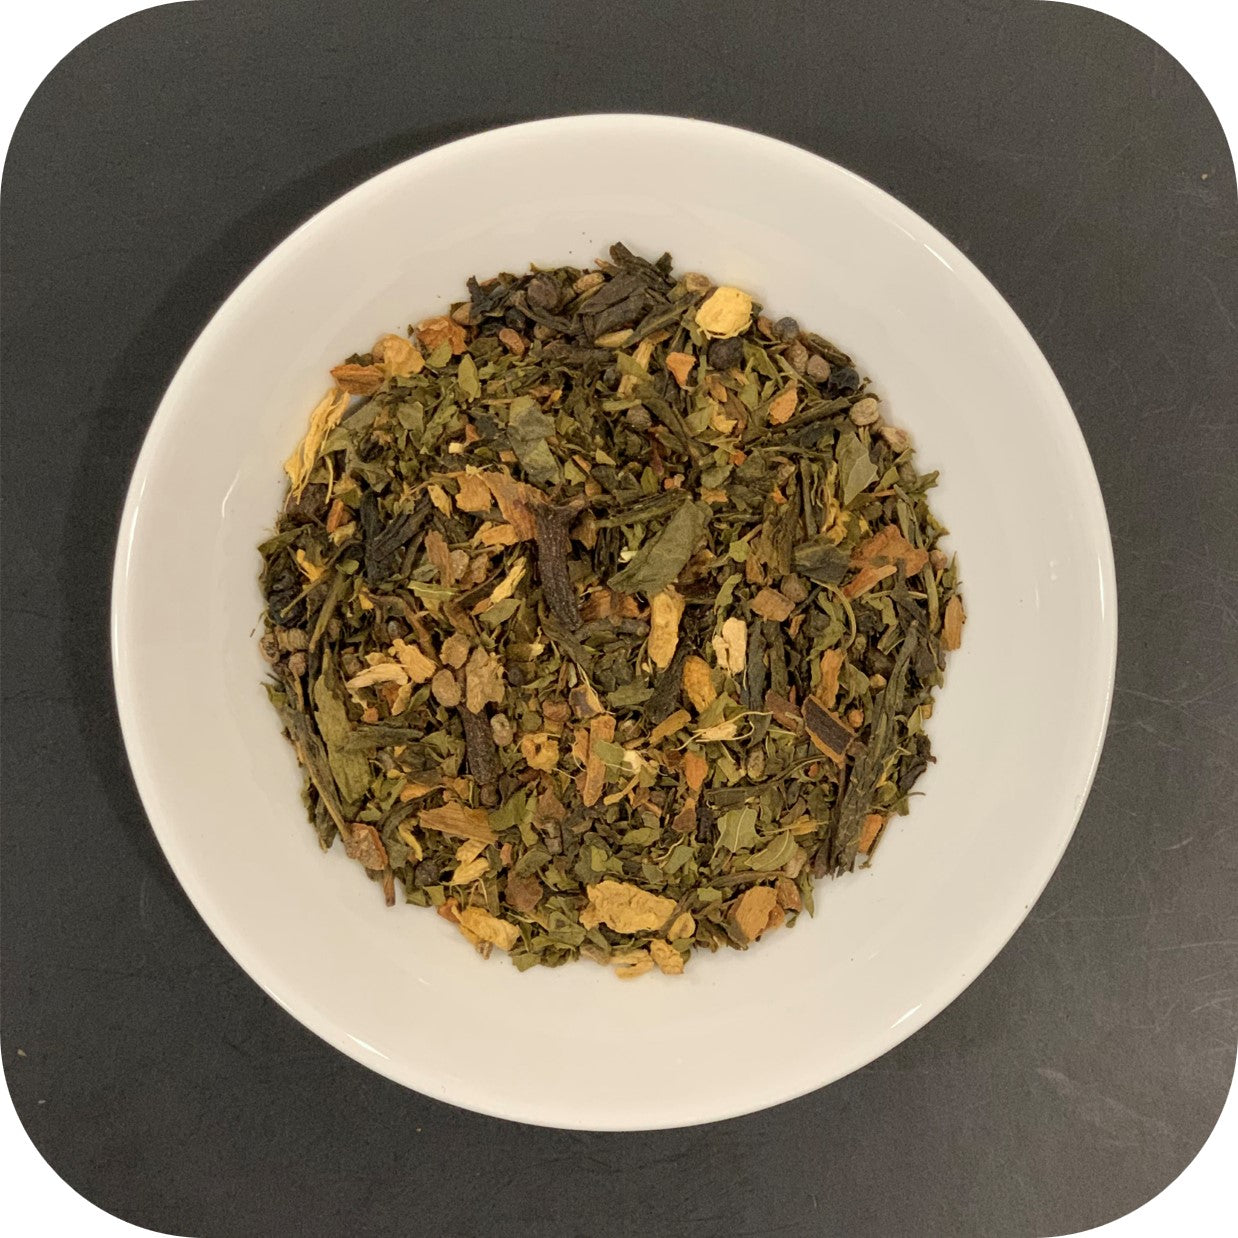 Green Chai - Green tea